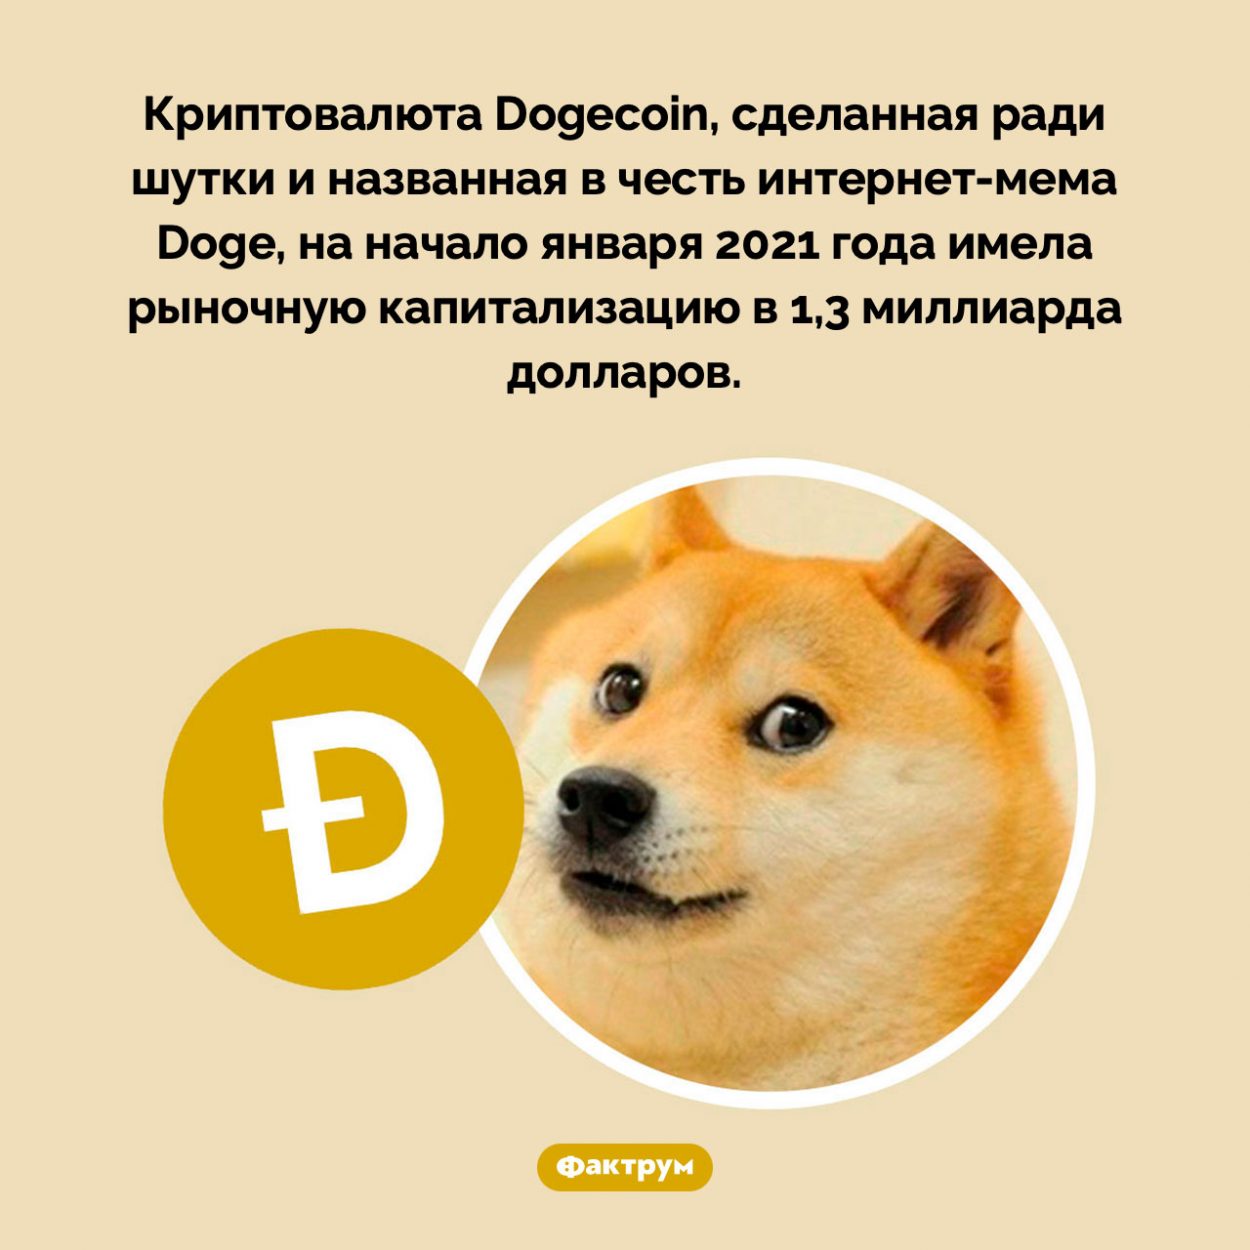 Шуточная криптовалюта заработала больше миллиарда долларов. Криптовалюта Dogecoin, сделанная ради шутки и названная в честь интернет-мема Doge, на начало января 2021 года имела рыночную капитализацию в 1,3 миллиарда долларов.